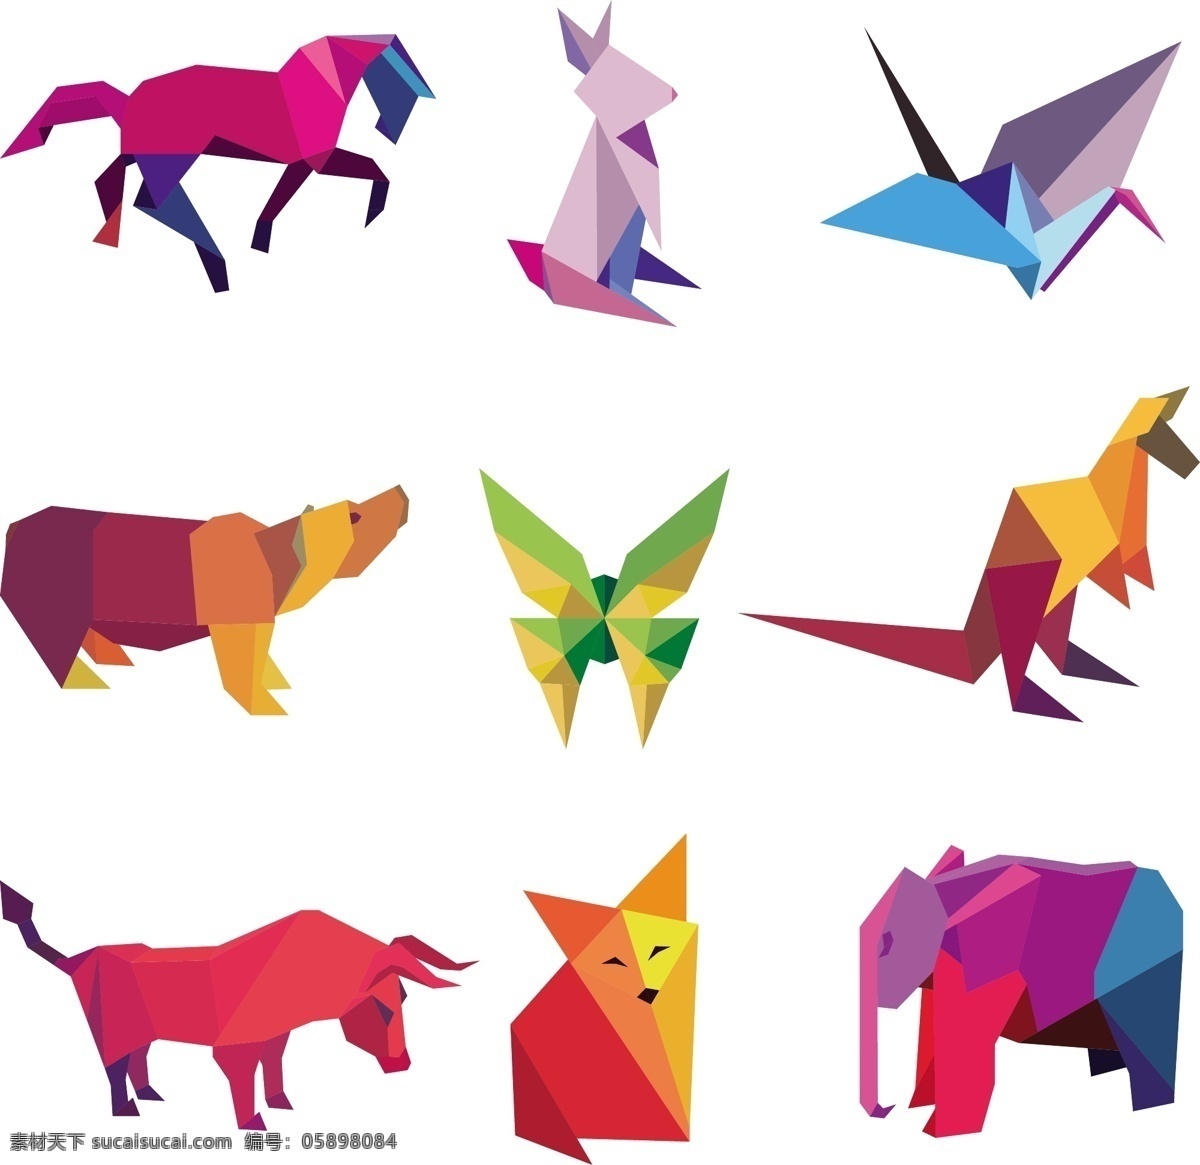 彩色动物折纸 插画动物 动物 小动物 剪纸 剪纸动物 剪纸动物类 插画小动物 插画 野外动物 野外 绘画动物 折纸动物 折纸 几何图形